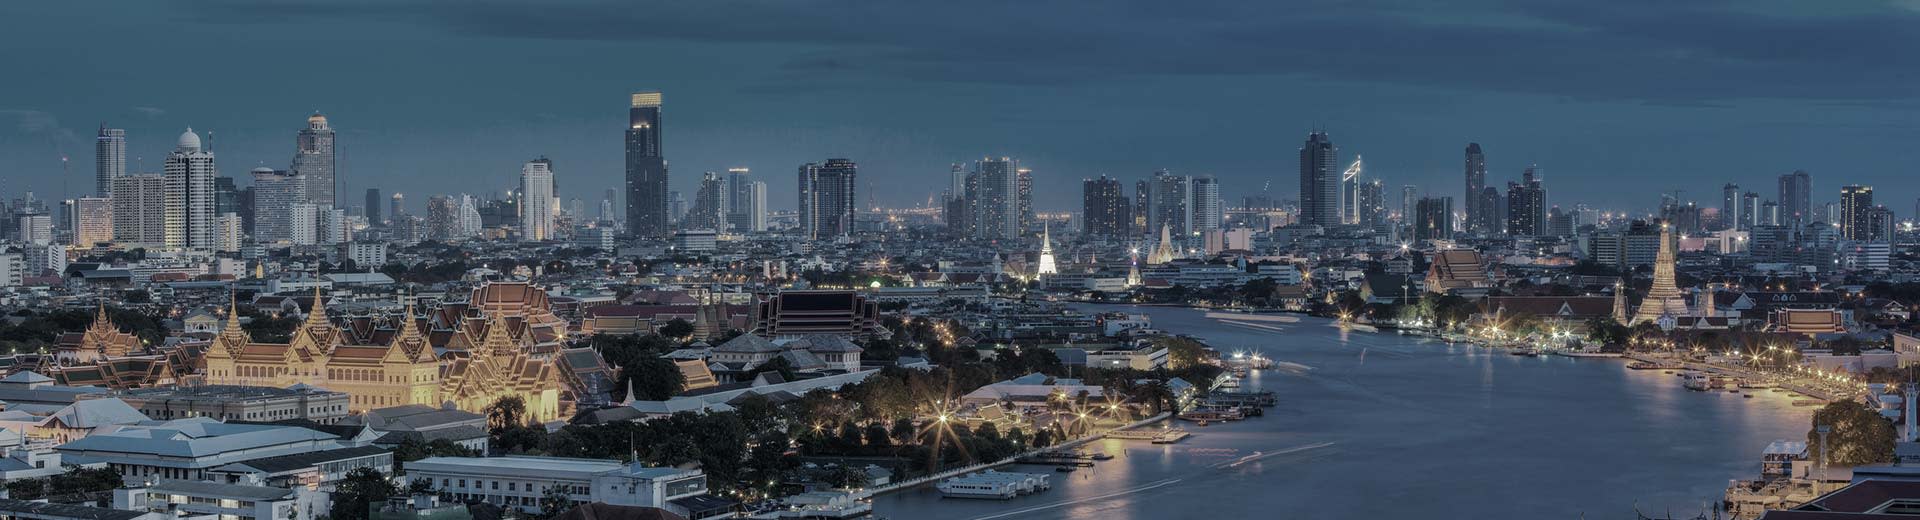 Vista del horizonte de Bangkok en una noche despejada con las luces de la ciudad creando un brillo.